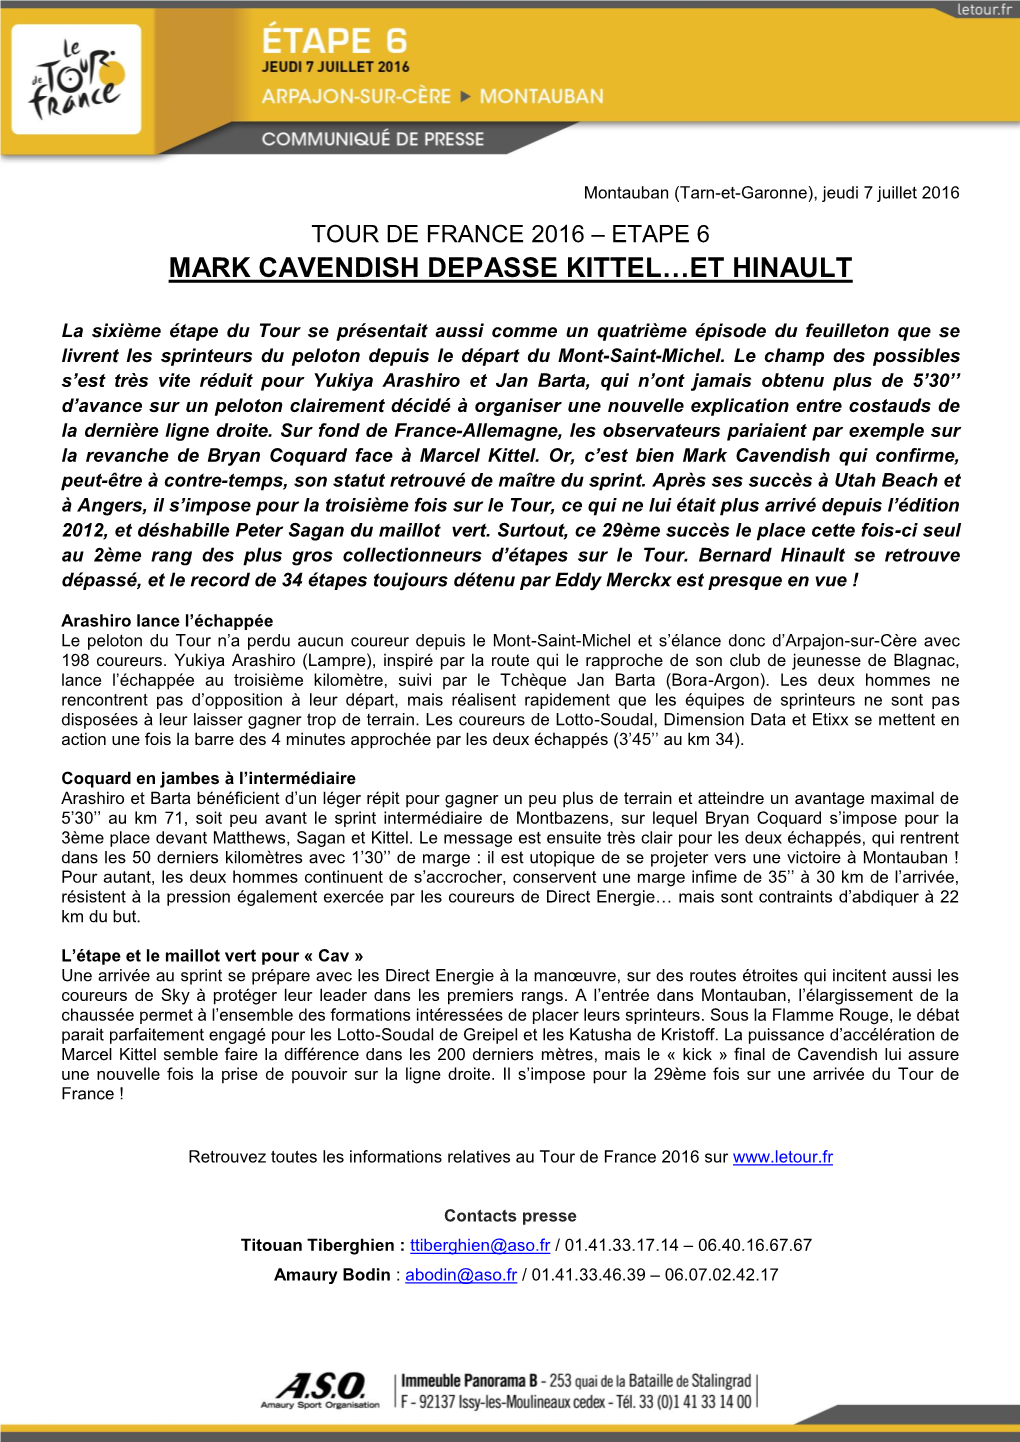 Mark Cavendish Depasse Kittel…Et Hinault